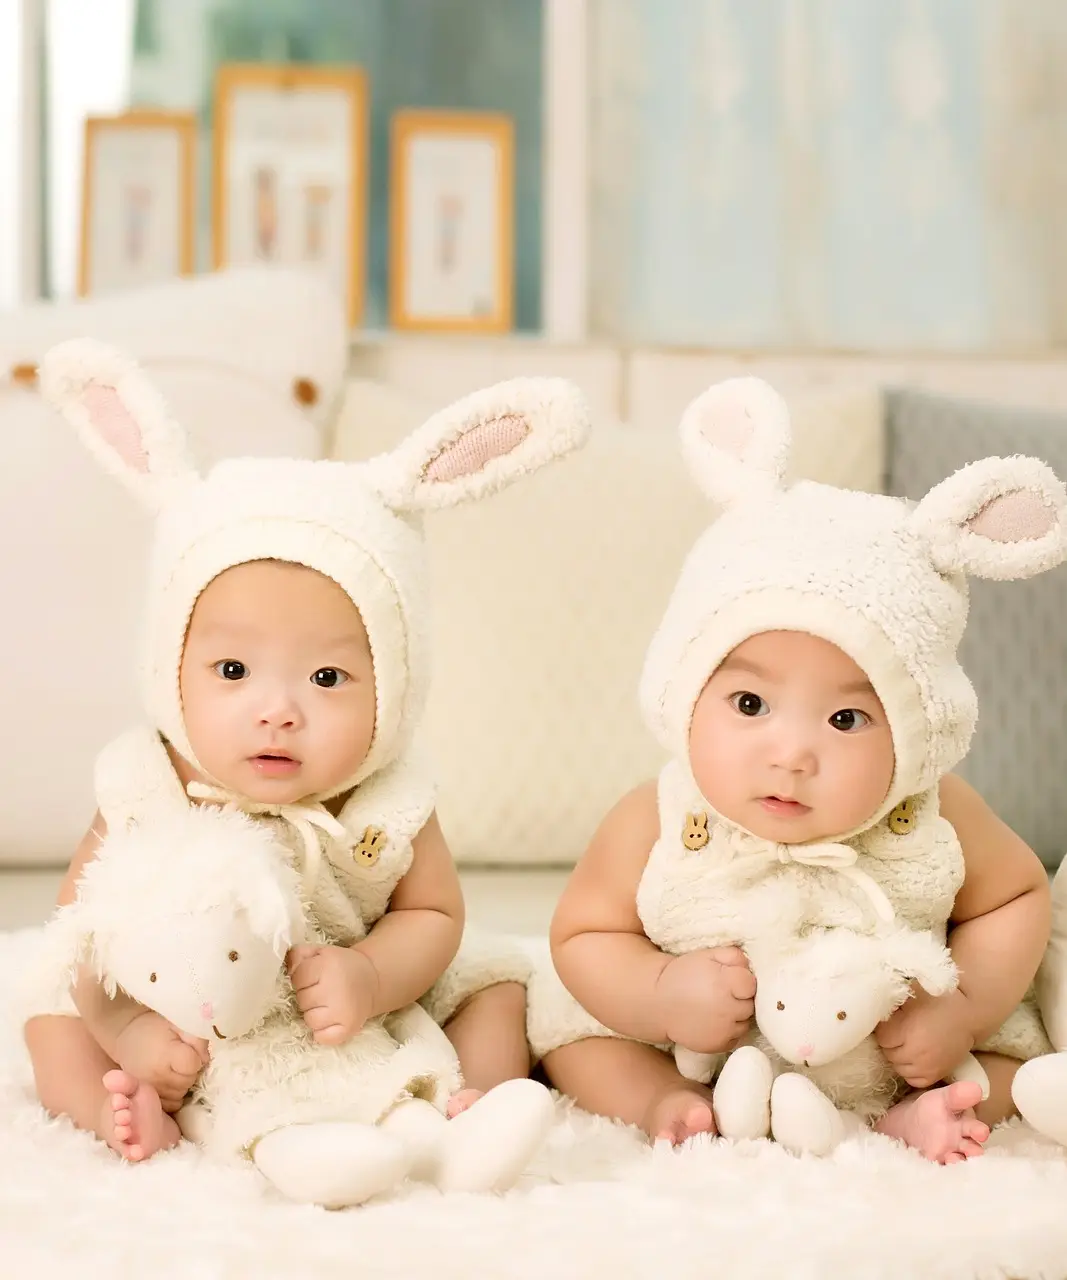 자녀-흰 이불위에 토기 모양 옷을 입고 앉아있는 아기 둘